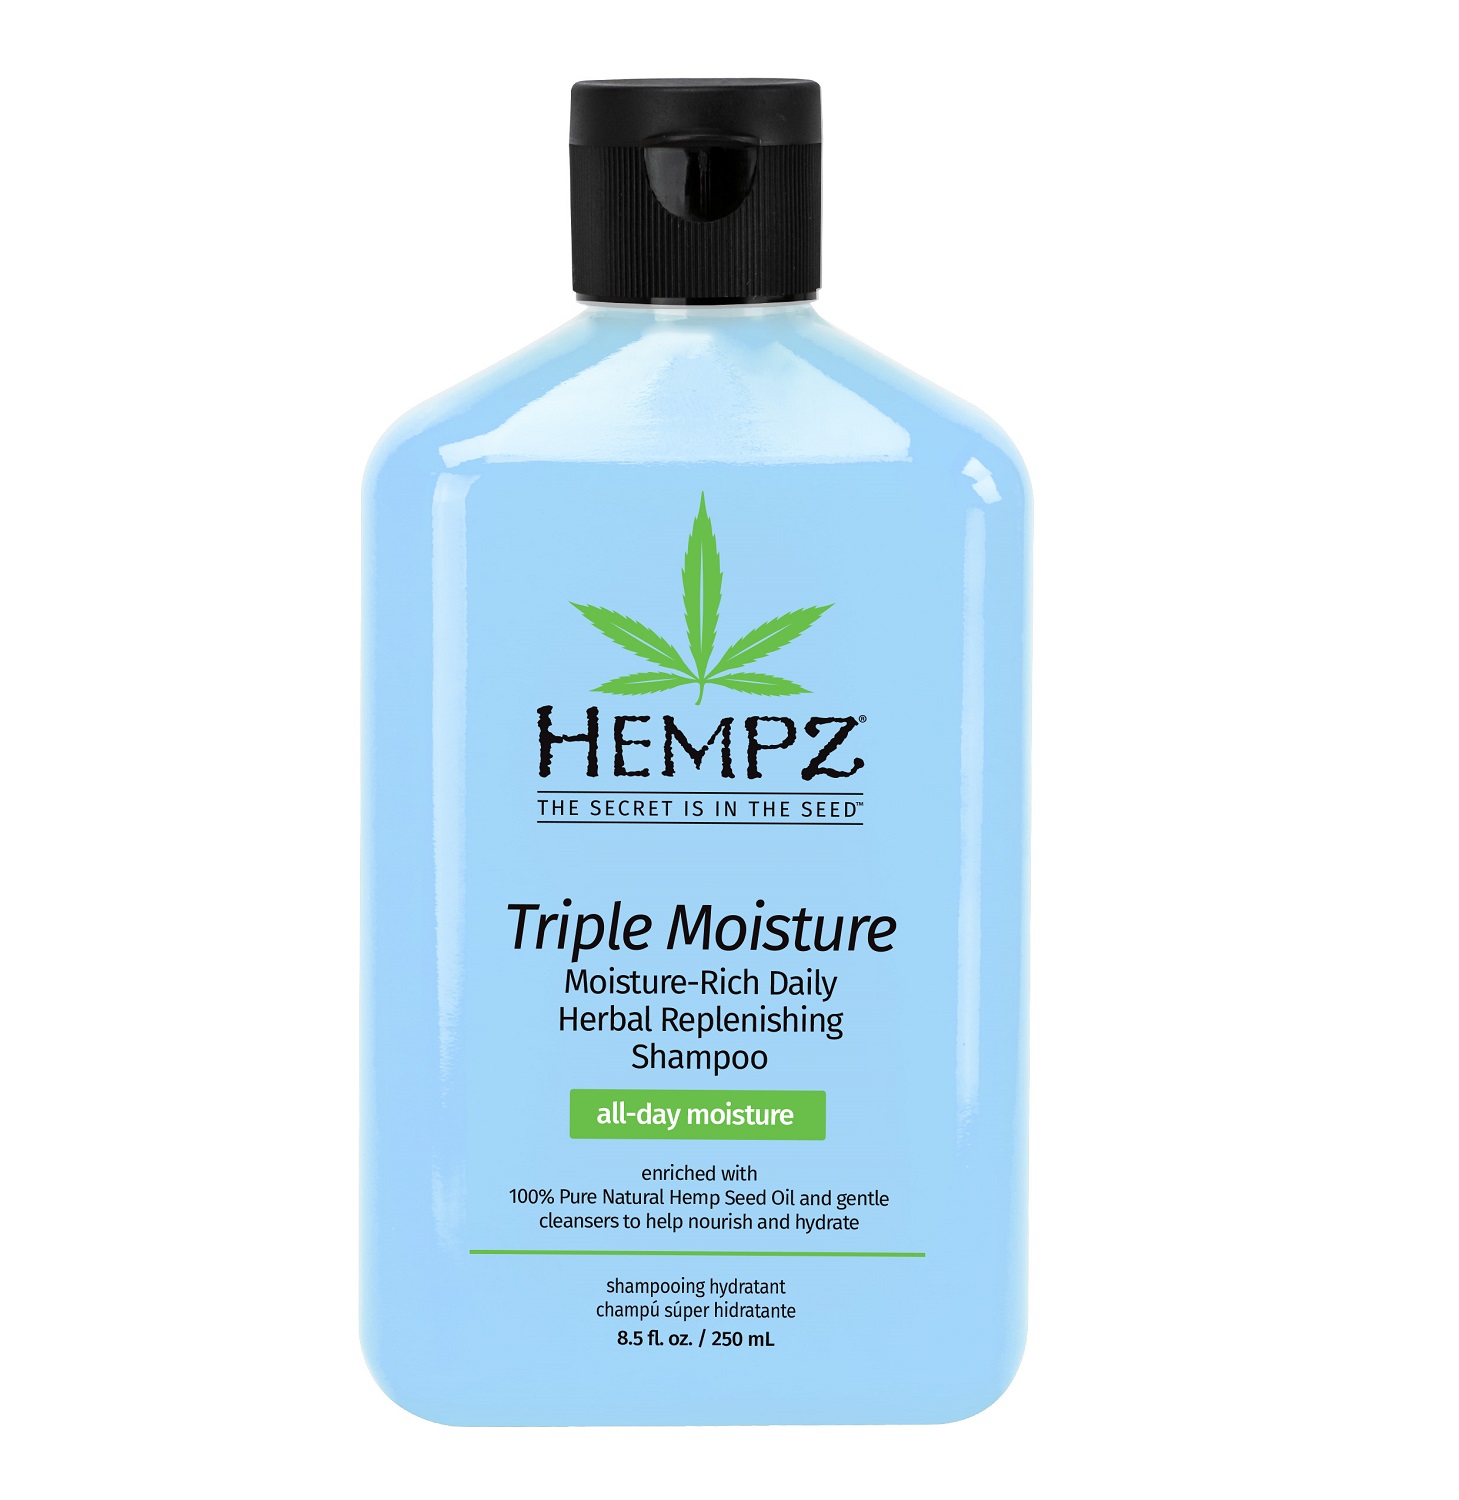 Hempz Растительный шампунь Triple Moisture Replenishing Shampoo, 250 мл (Hempz, Тройное увлажнение)